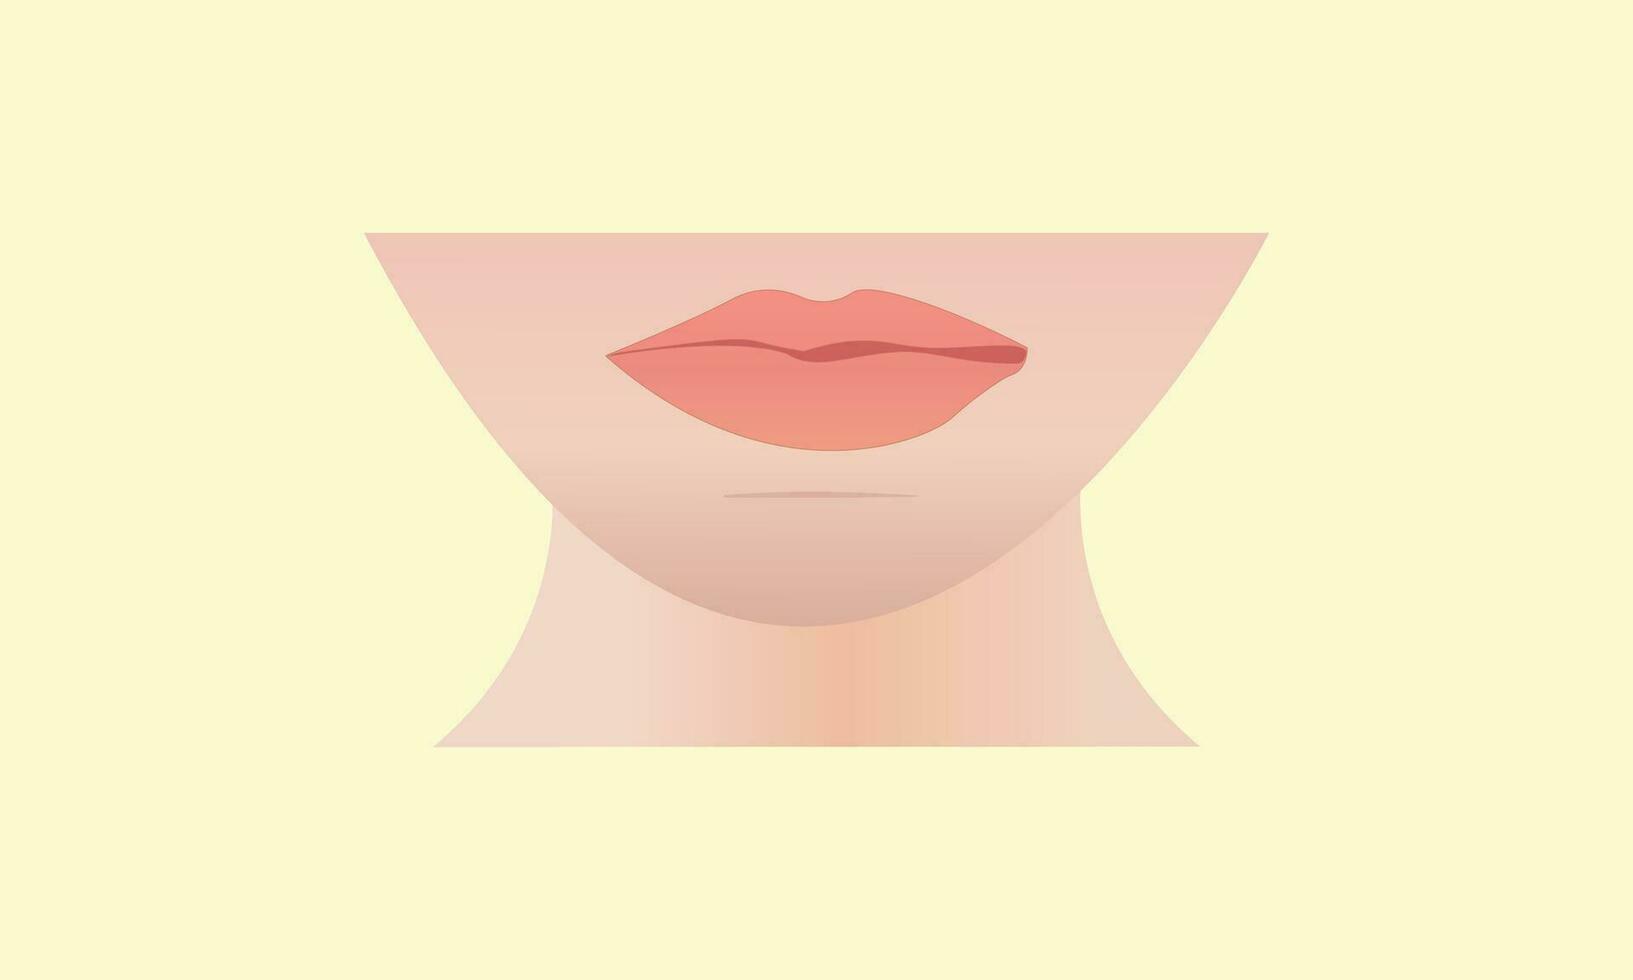 feminin ansikte illustration av mun, haka, och kinder med nacke mänsklig mannekäng vektor